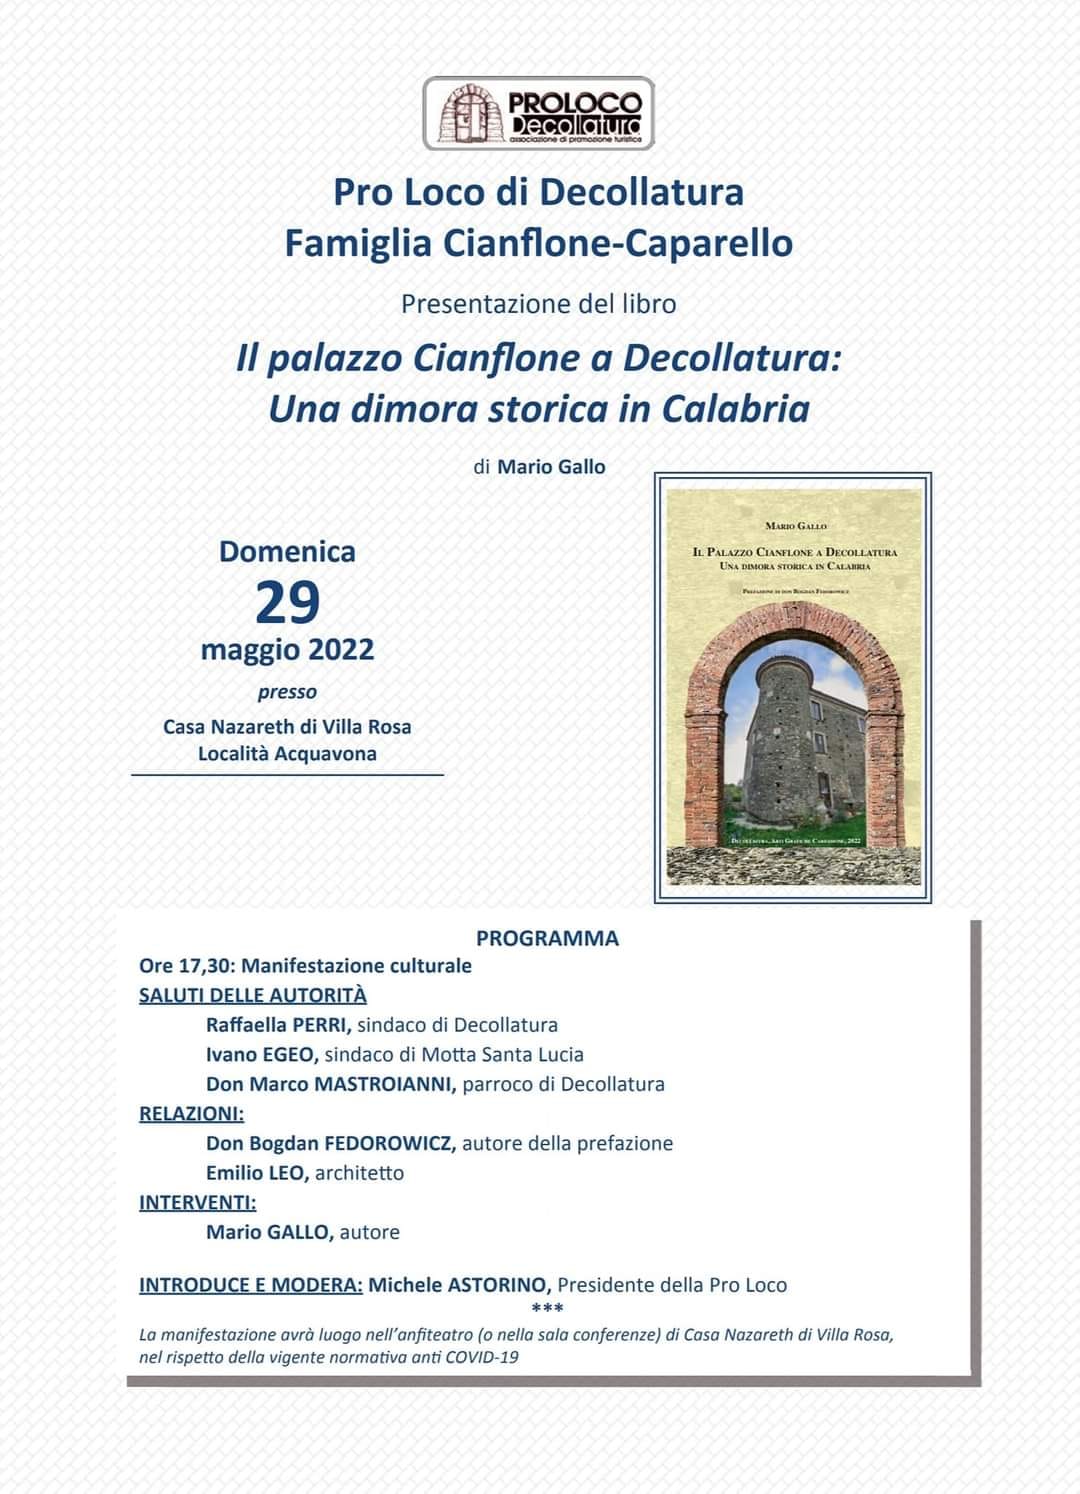 Presentazione del libro Il Palazzo Cianflone a Decollatura: Una dimora storica in Calabria, di Mario Gallo.